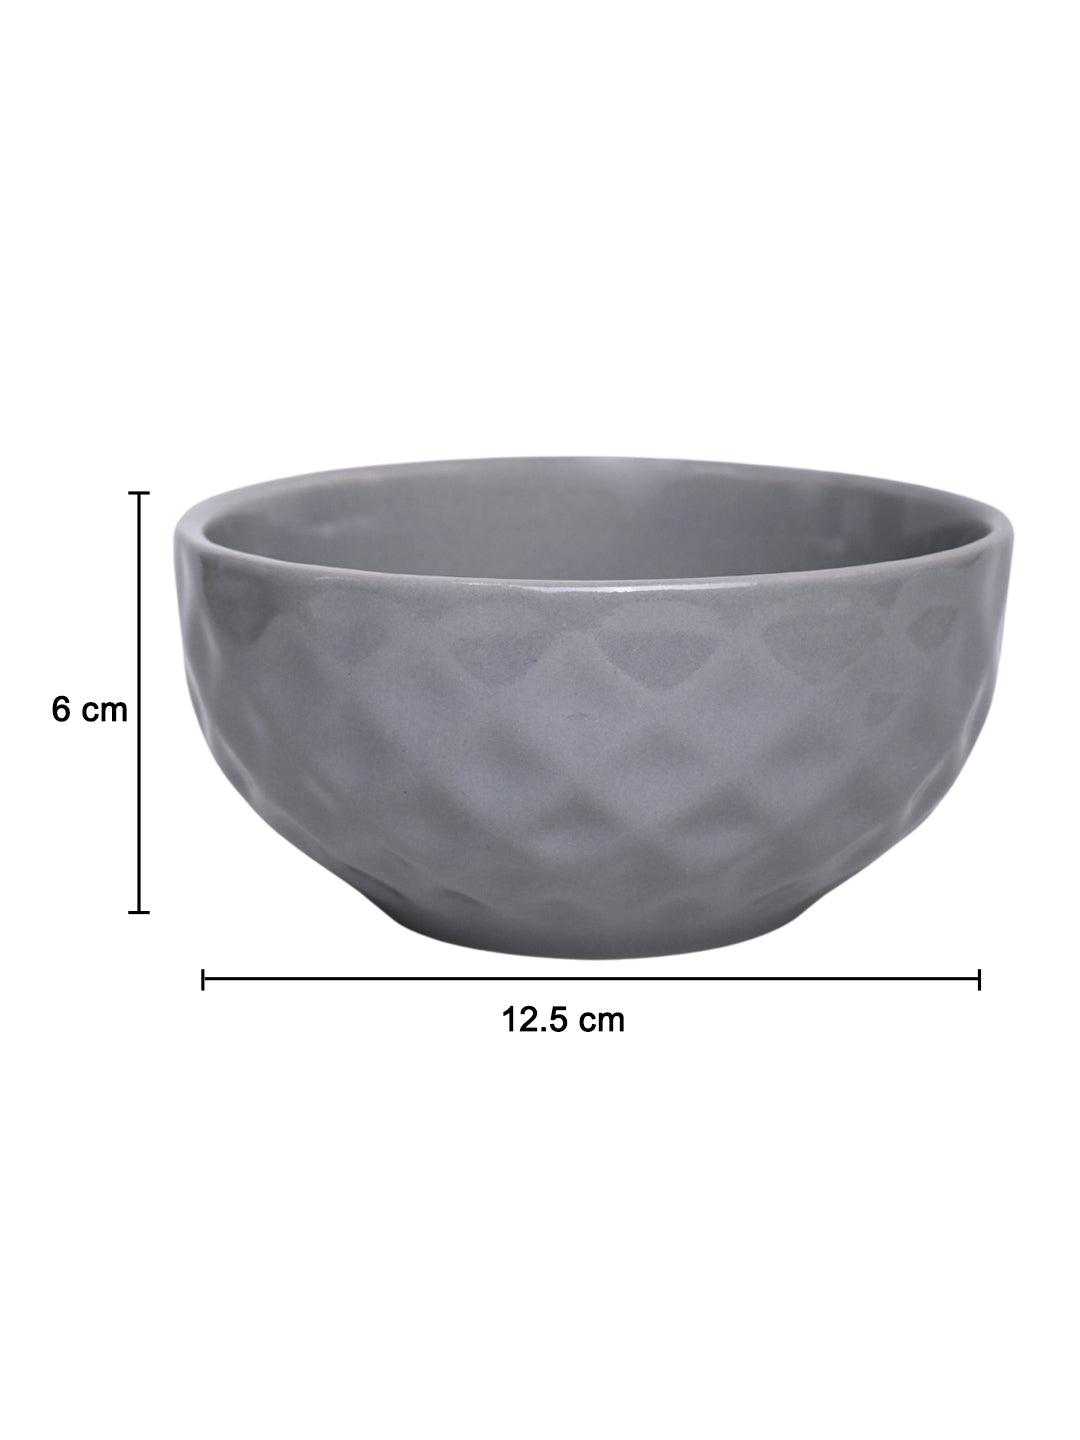 VON CASA Ceramic Bowl - 450Ml, Light Grey - MARKET 99